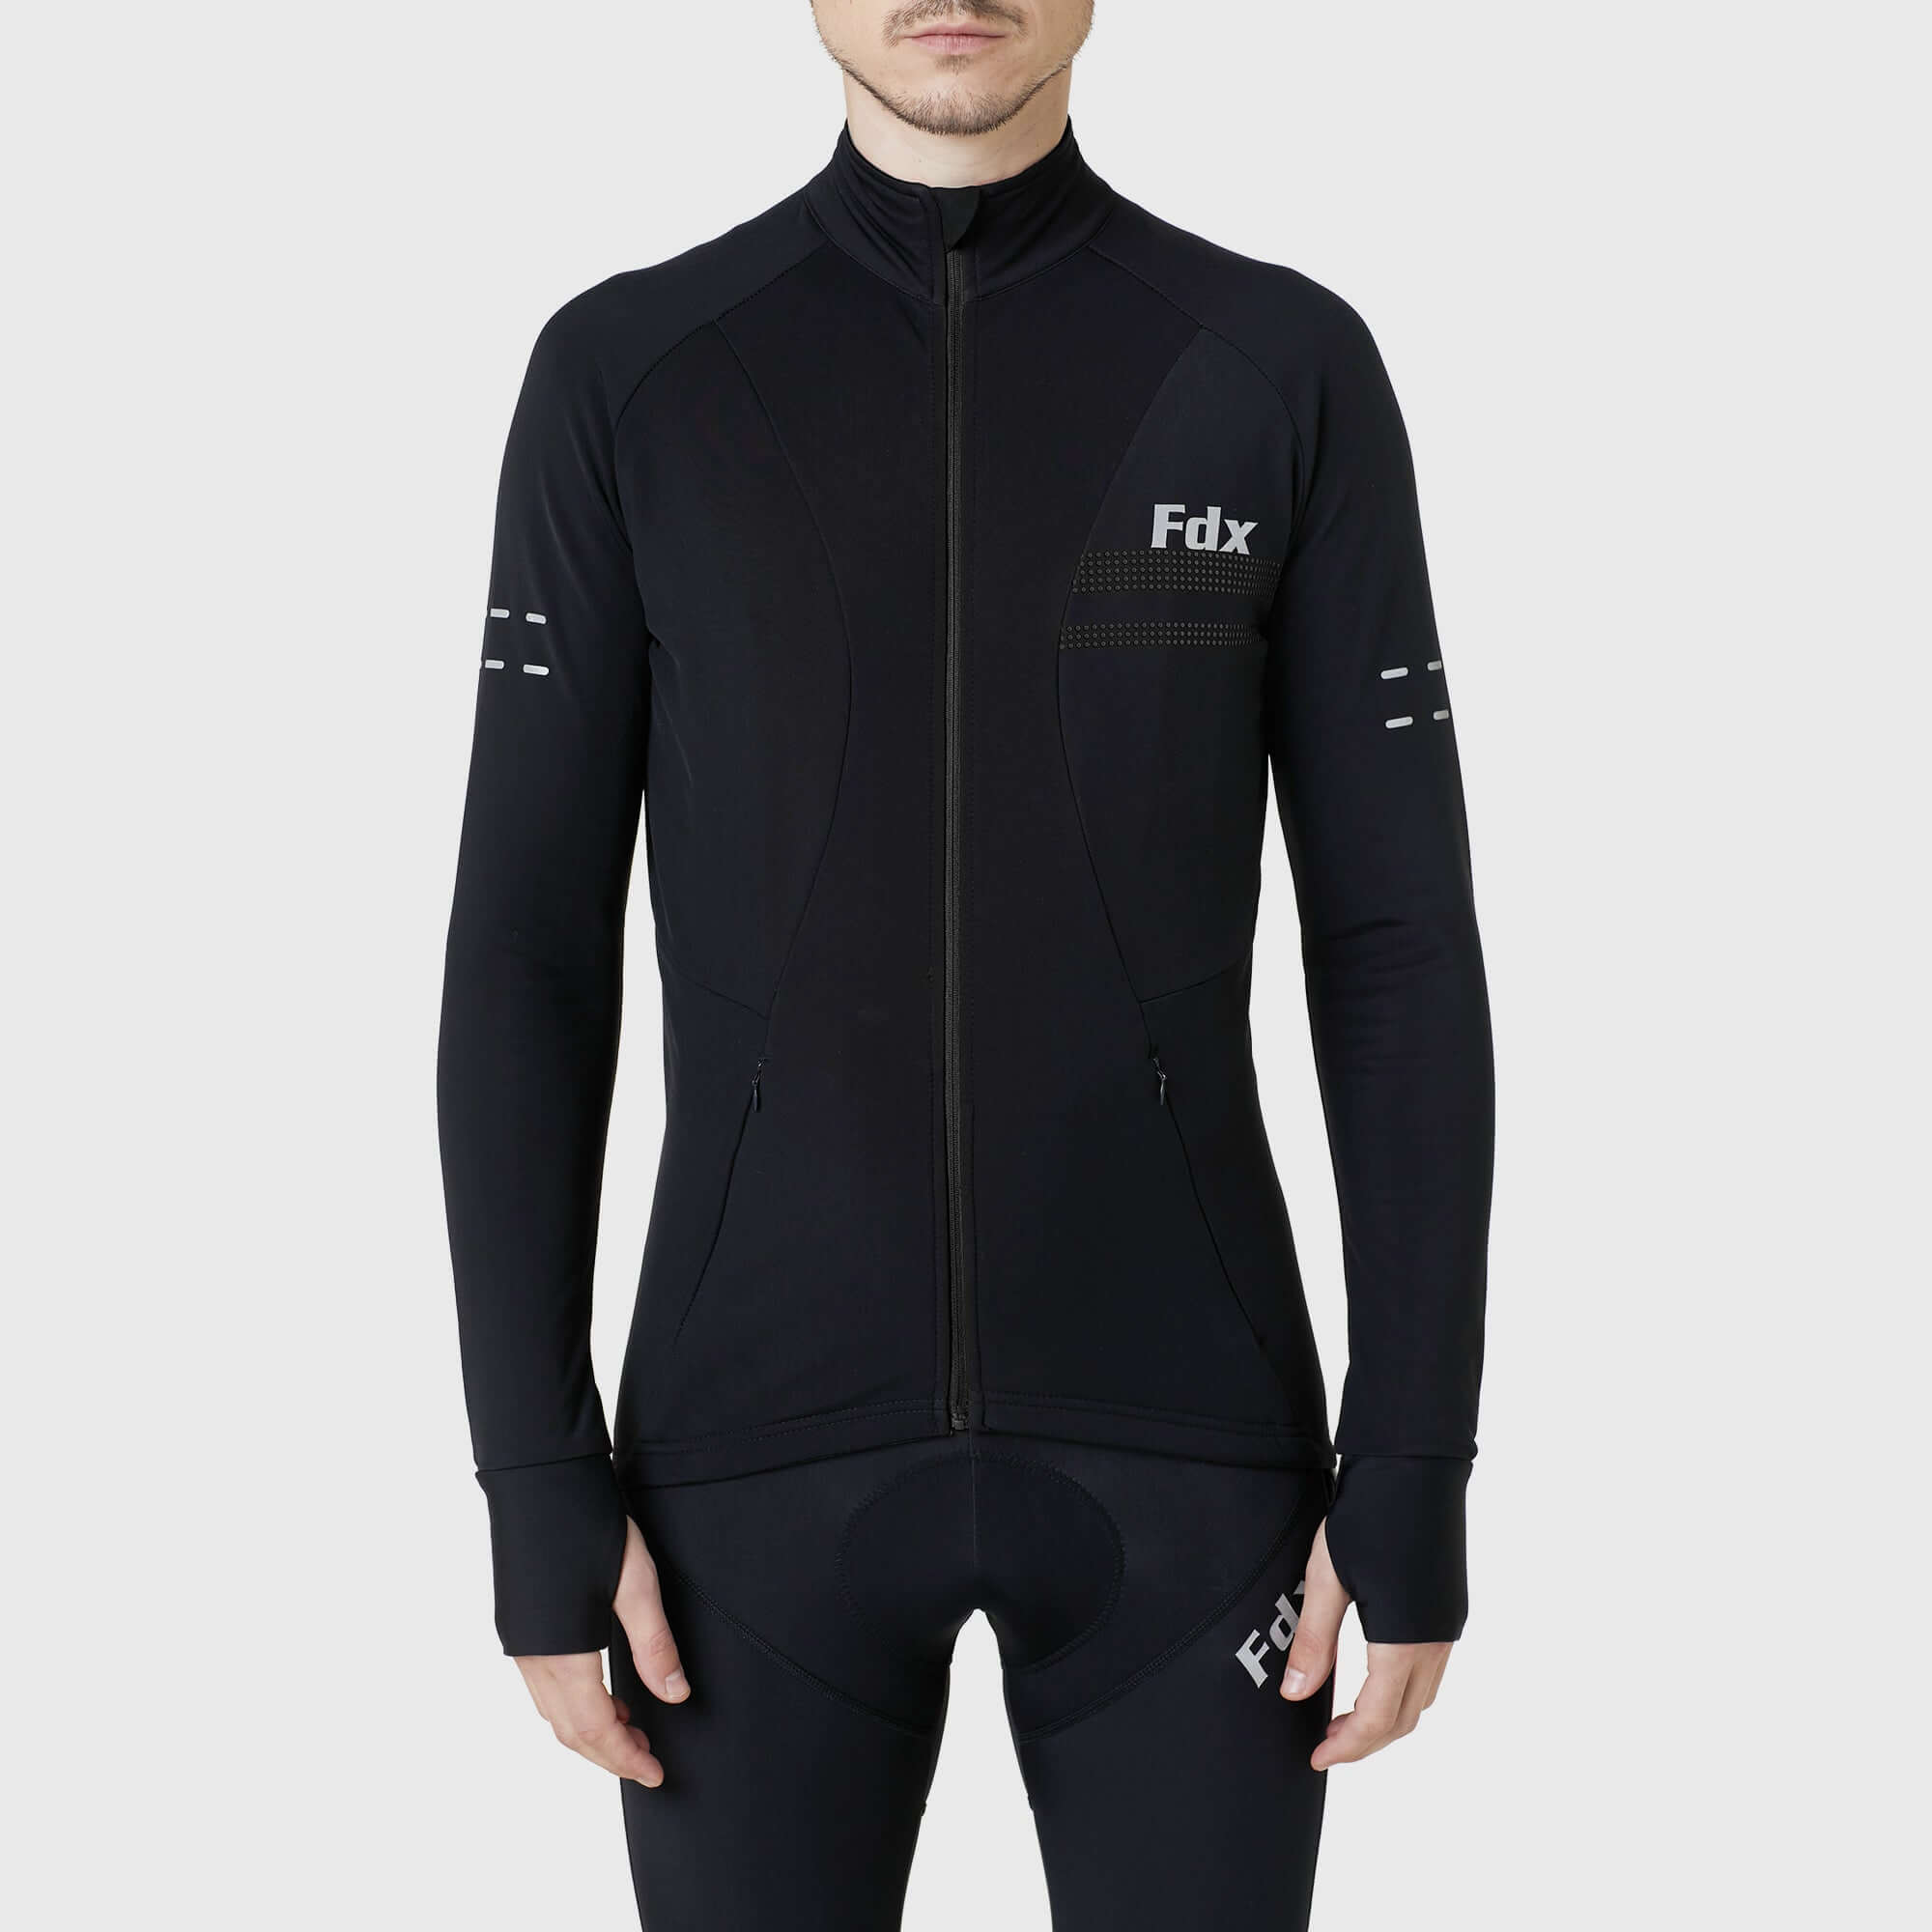 Fdx Warm Cycling Jersey for Men's Black for Winter Roubaix Thermal Fleece Road Bike Wear Top Full Zipper, Pockets & Hi viz Reflectors - Arch